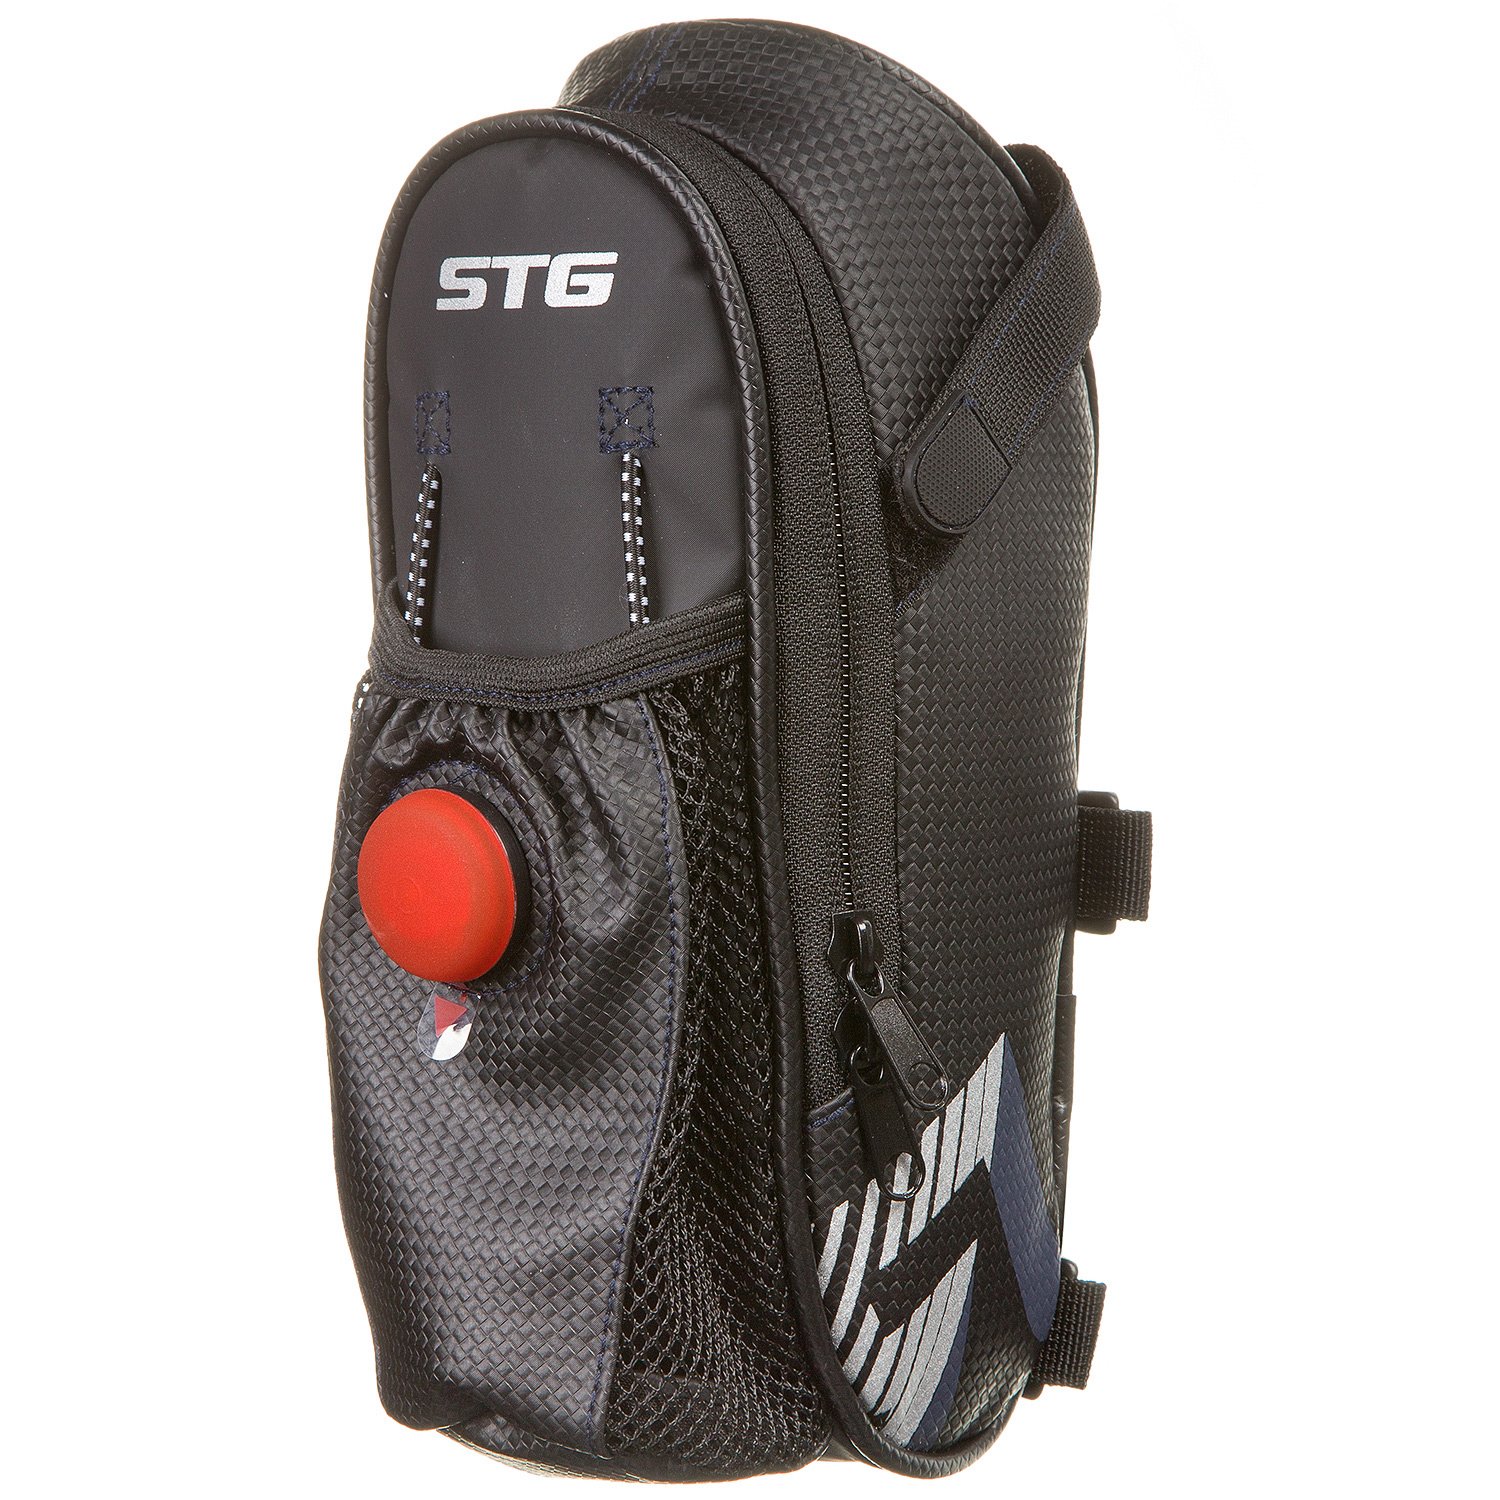 Велосумка STG 131396, под седло, с карманом для фляги, с красным фонарем сзади, чёрный, Х88296 УТ-00286466 - фото 2